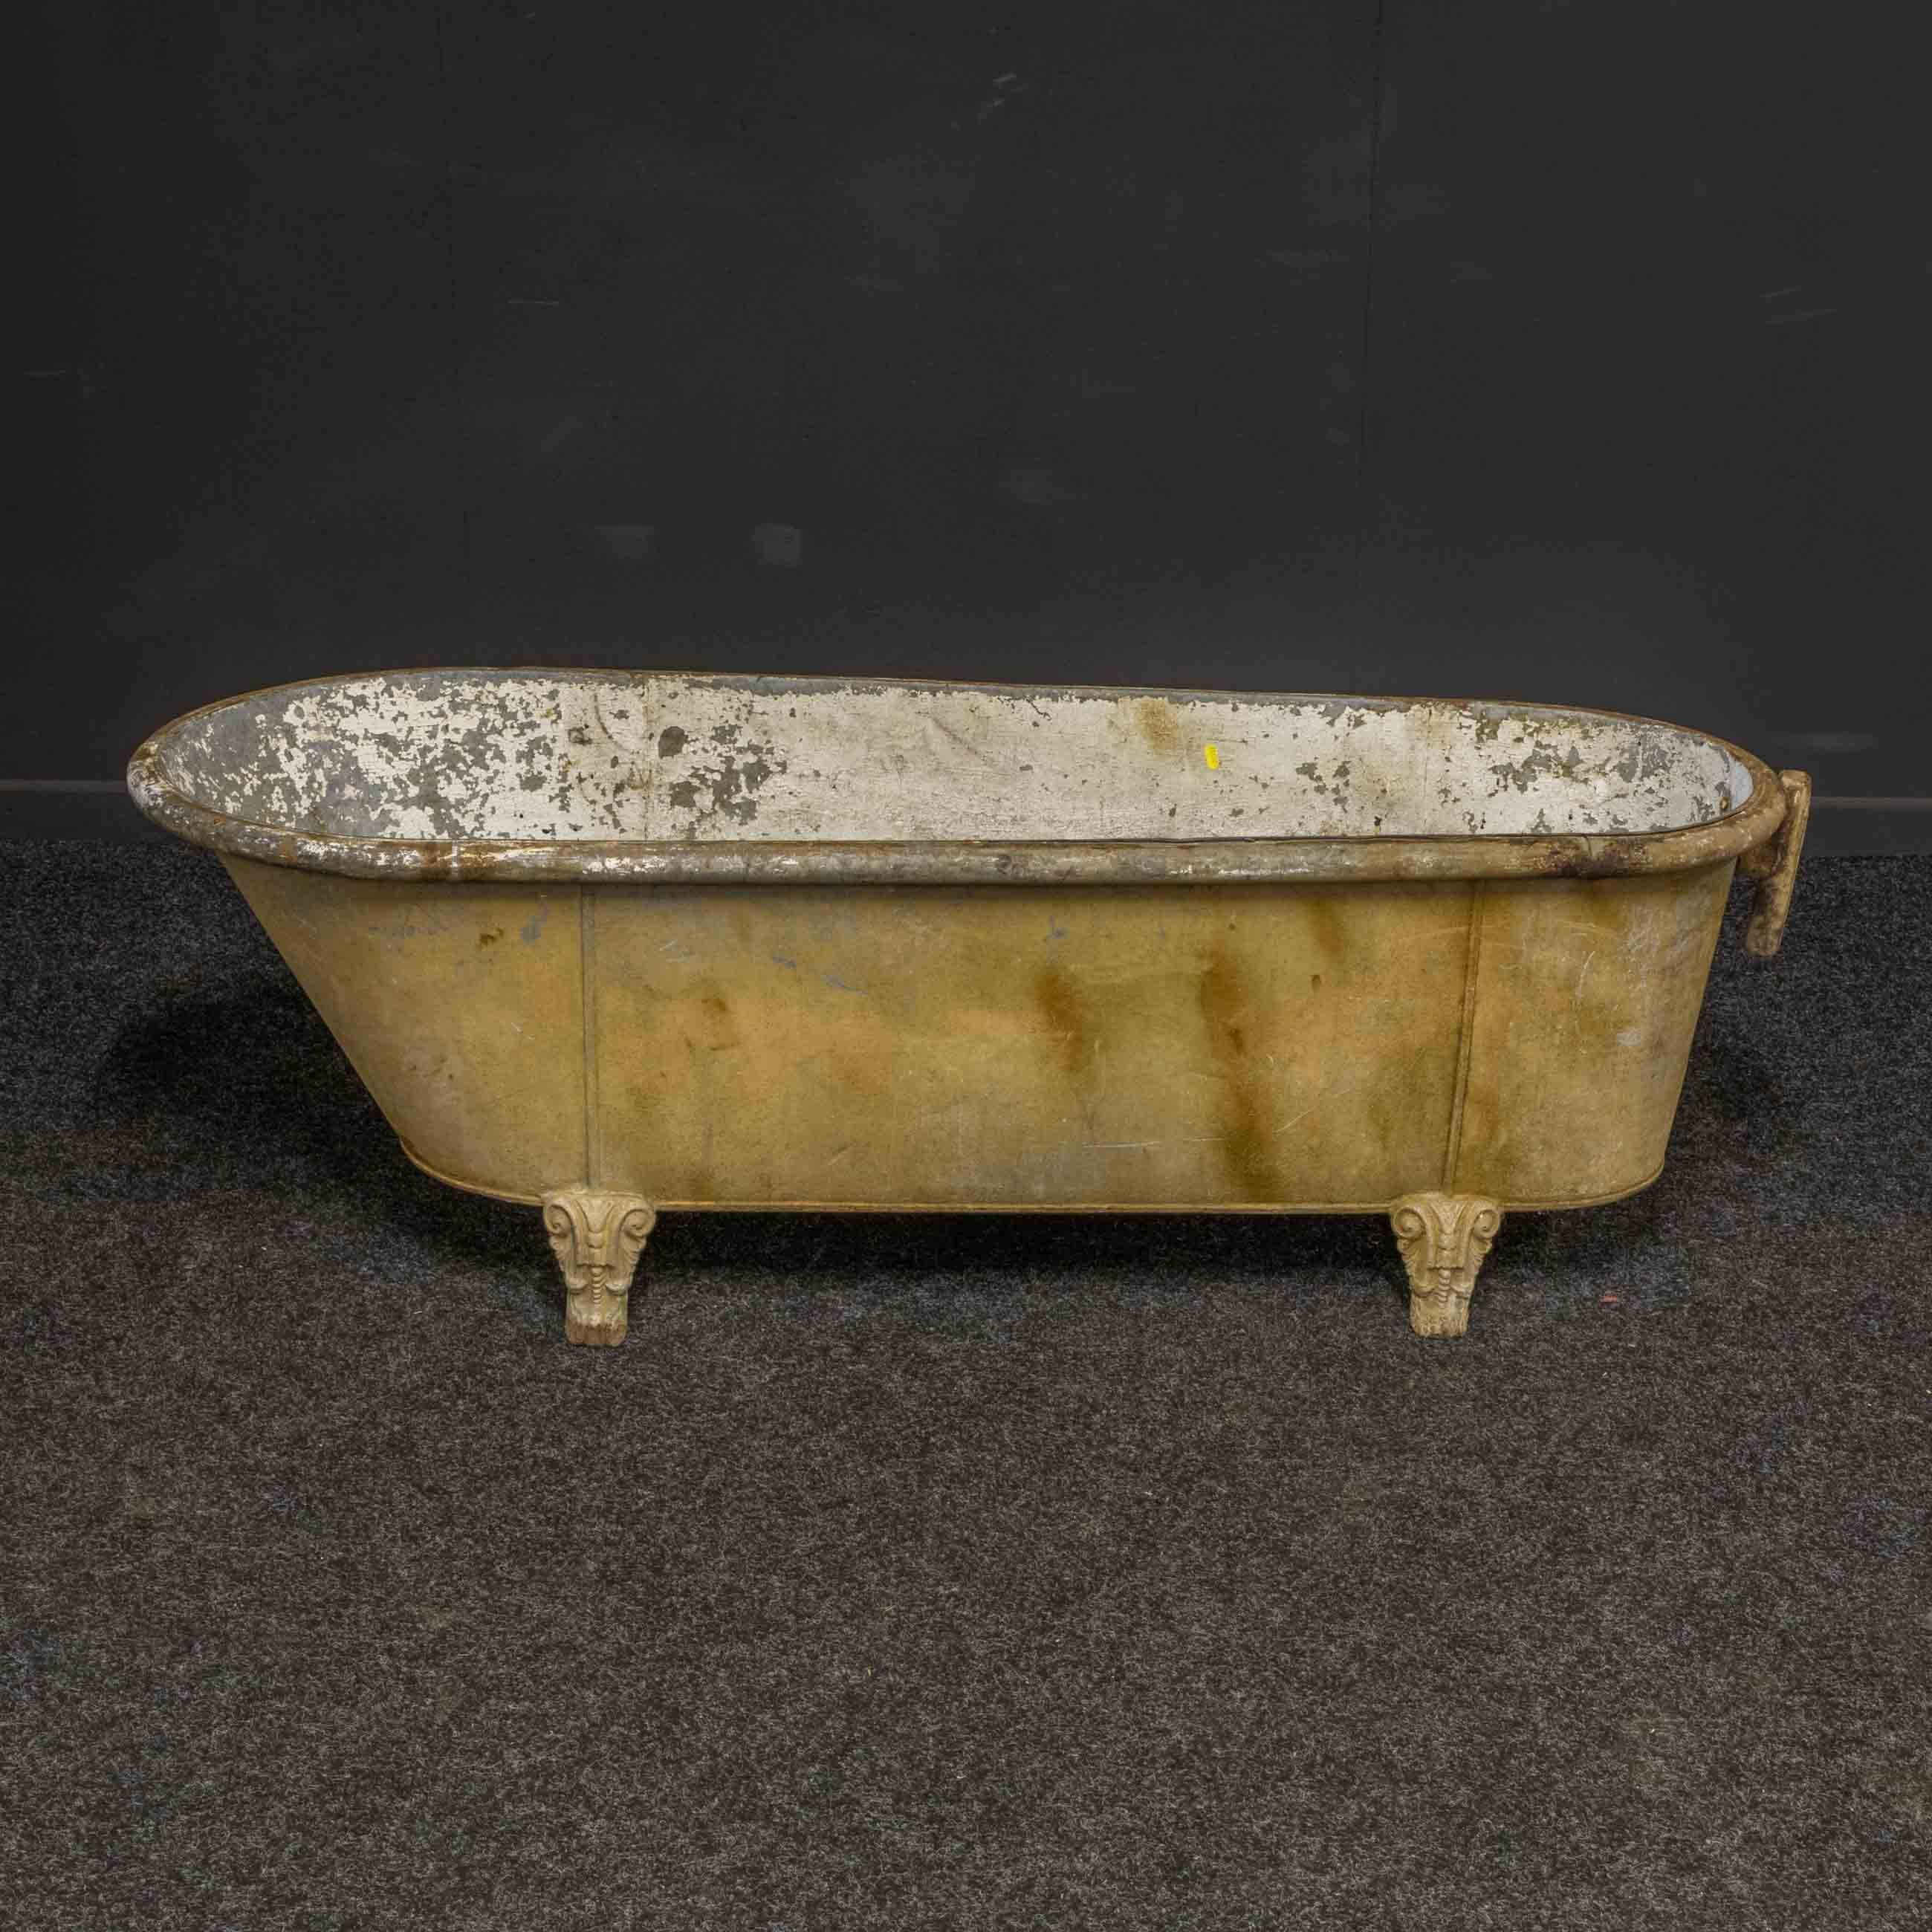 old bath tub